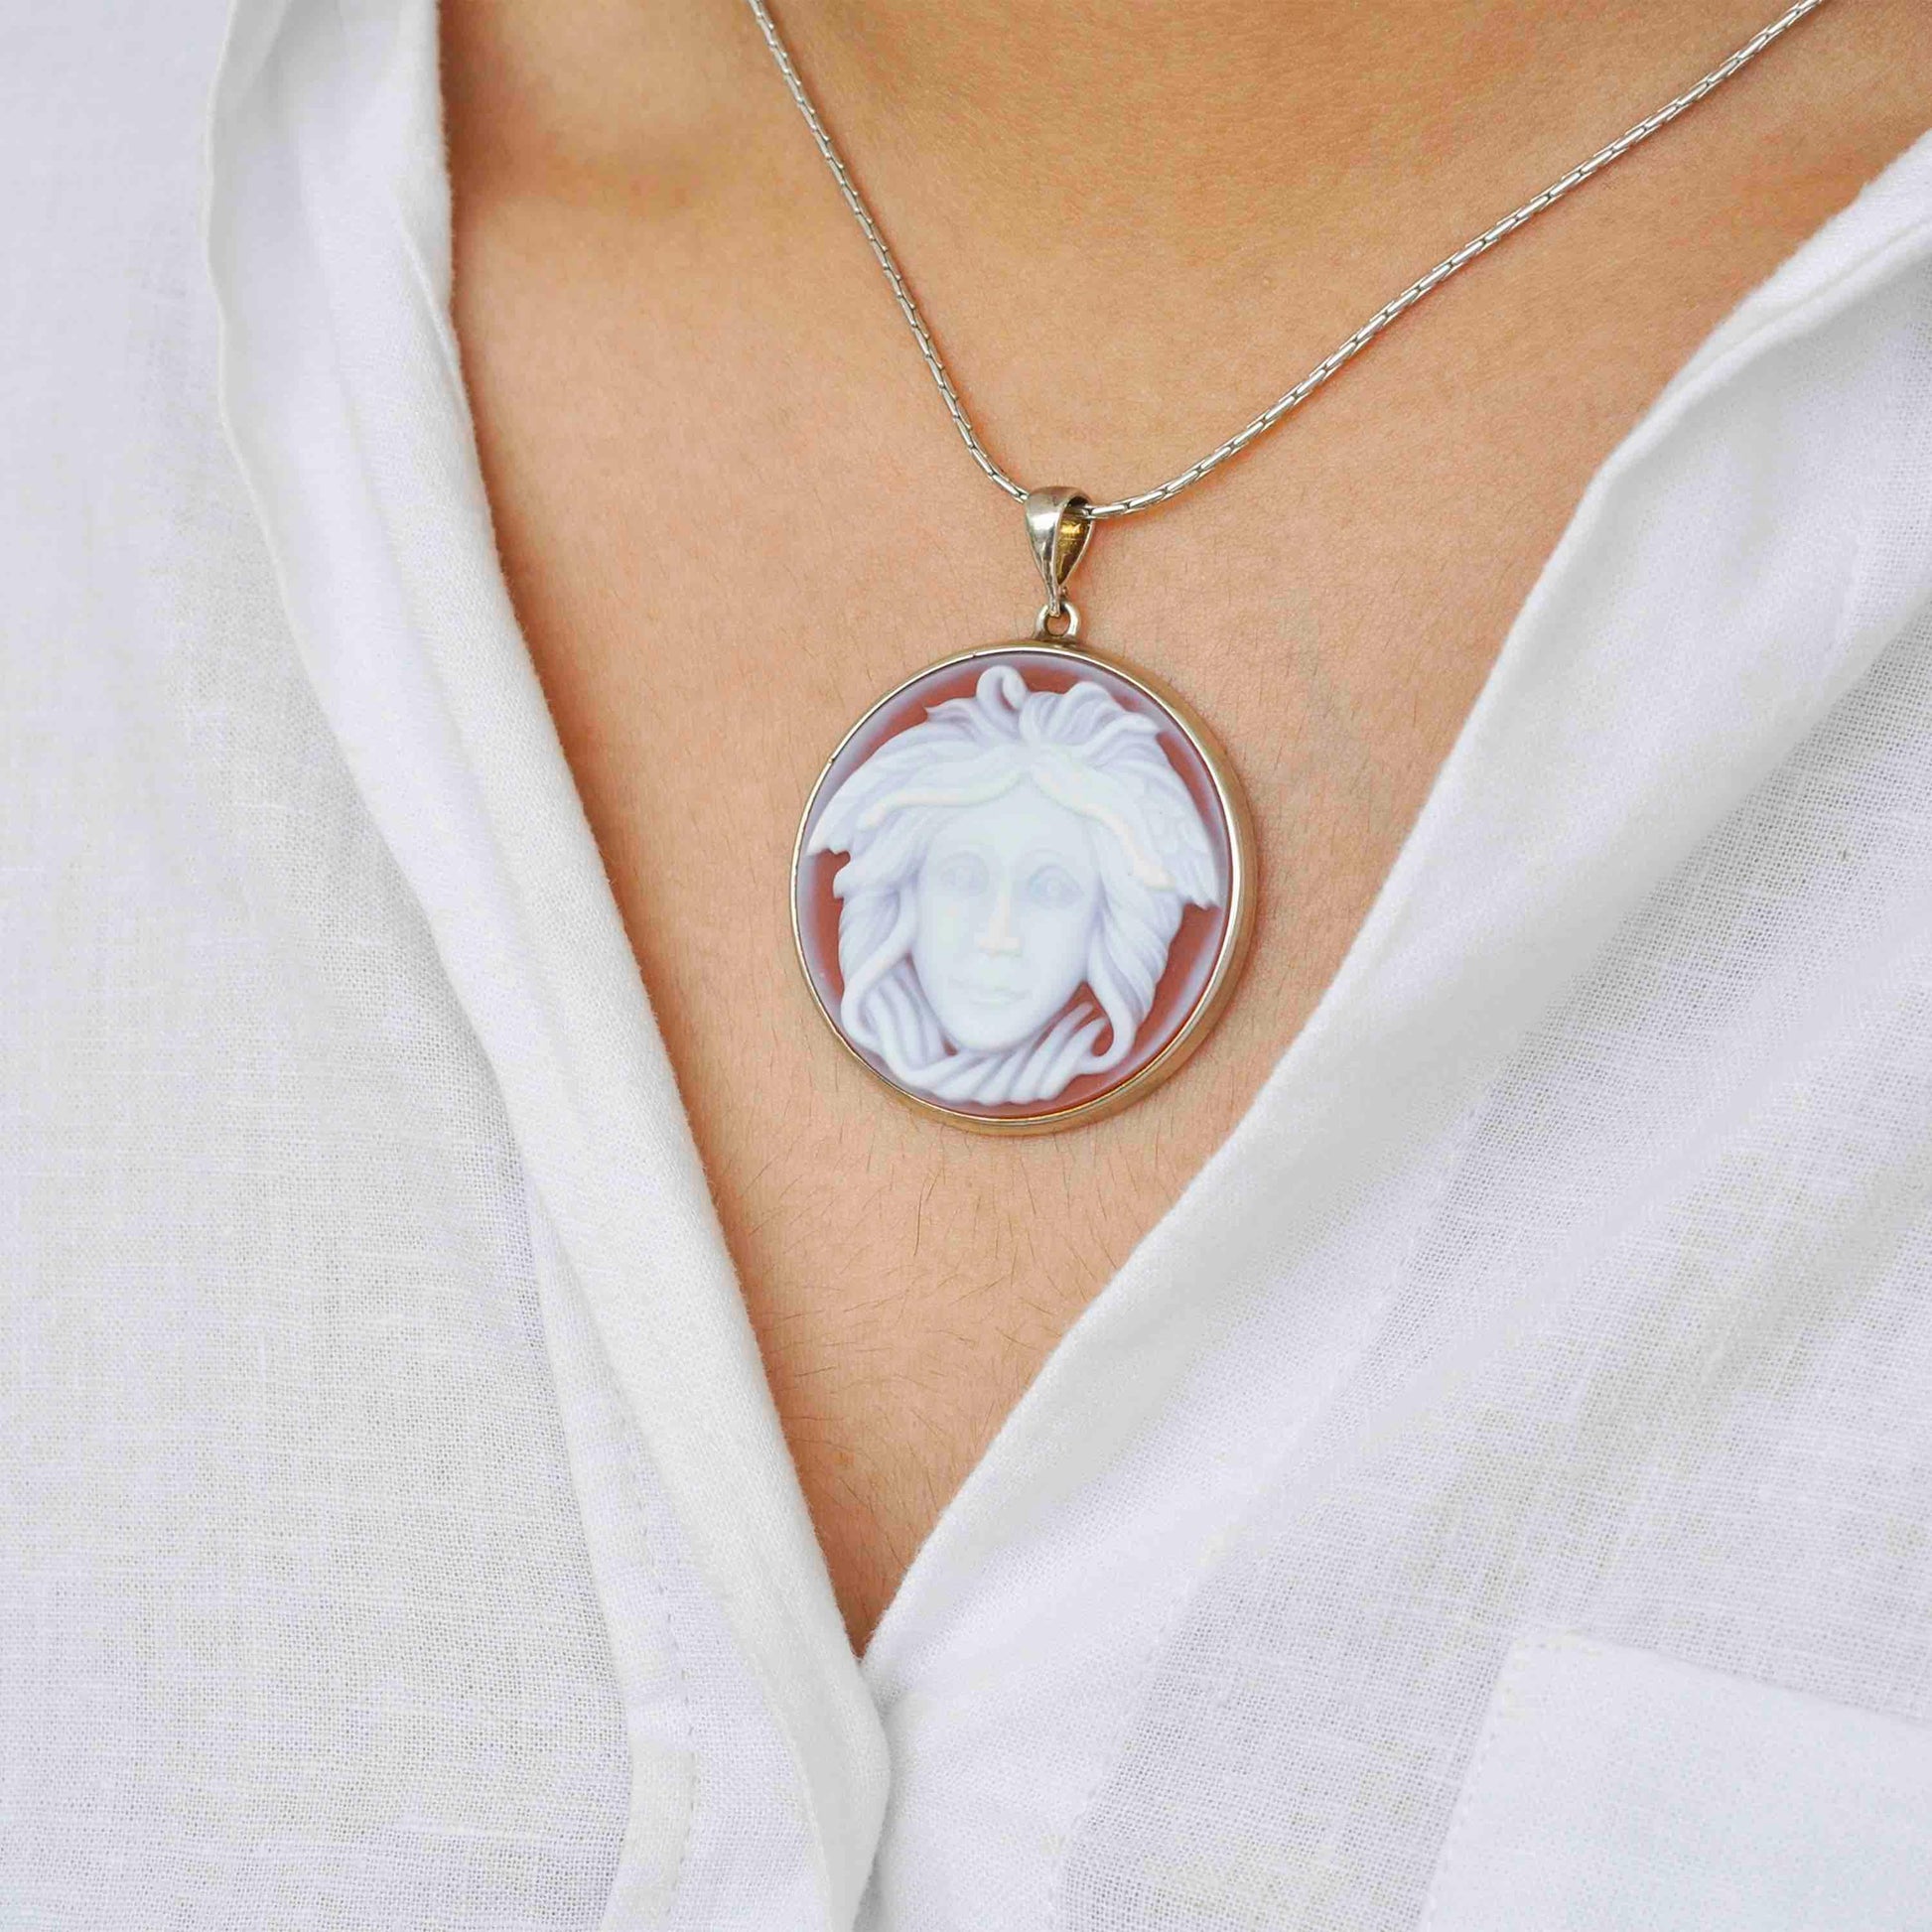 Unique sterling silver Medusa agate cameo pendant